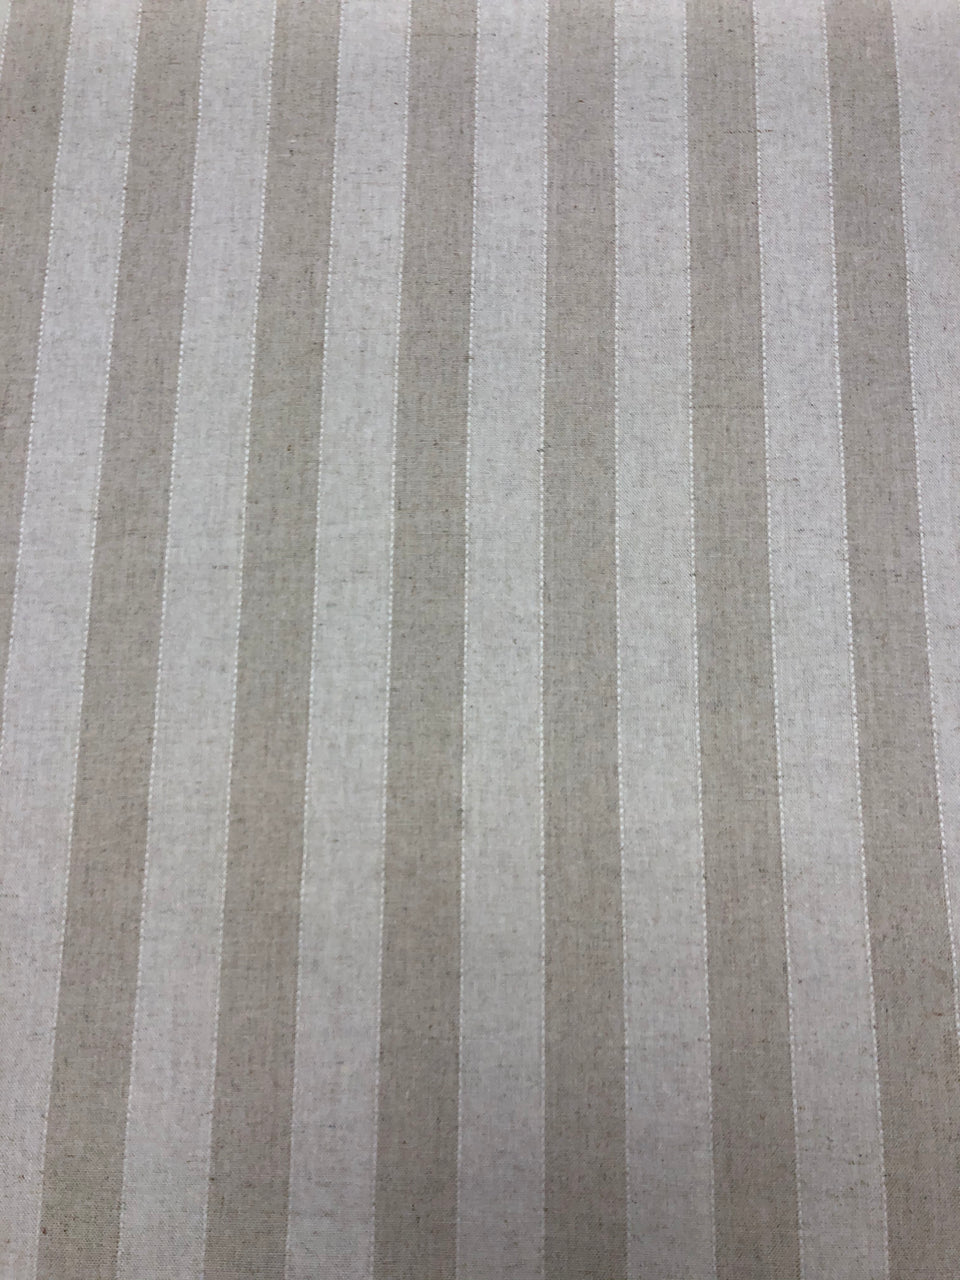 Oatmeal Stripe 1" - Linen